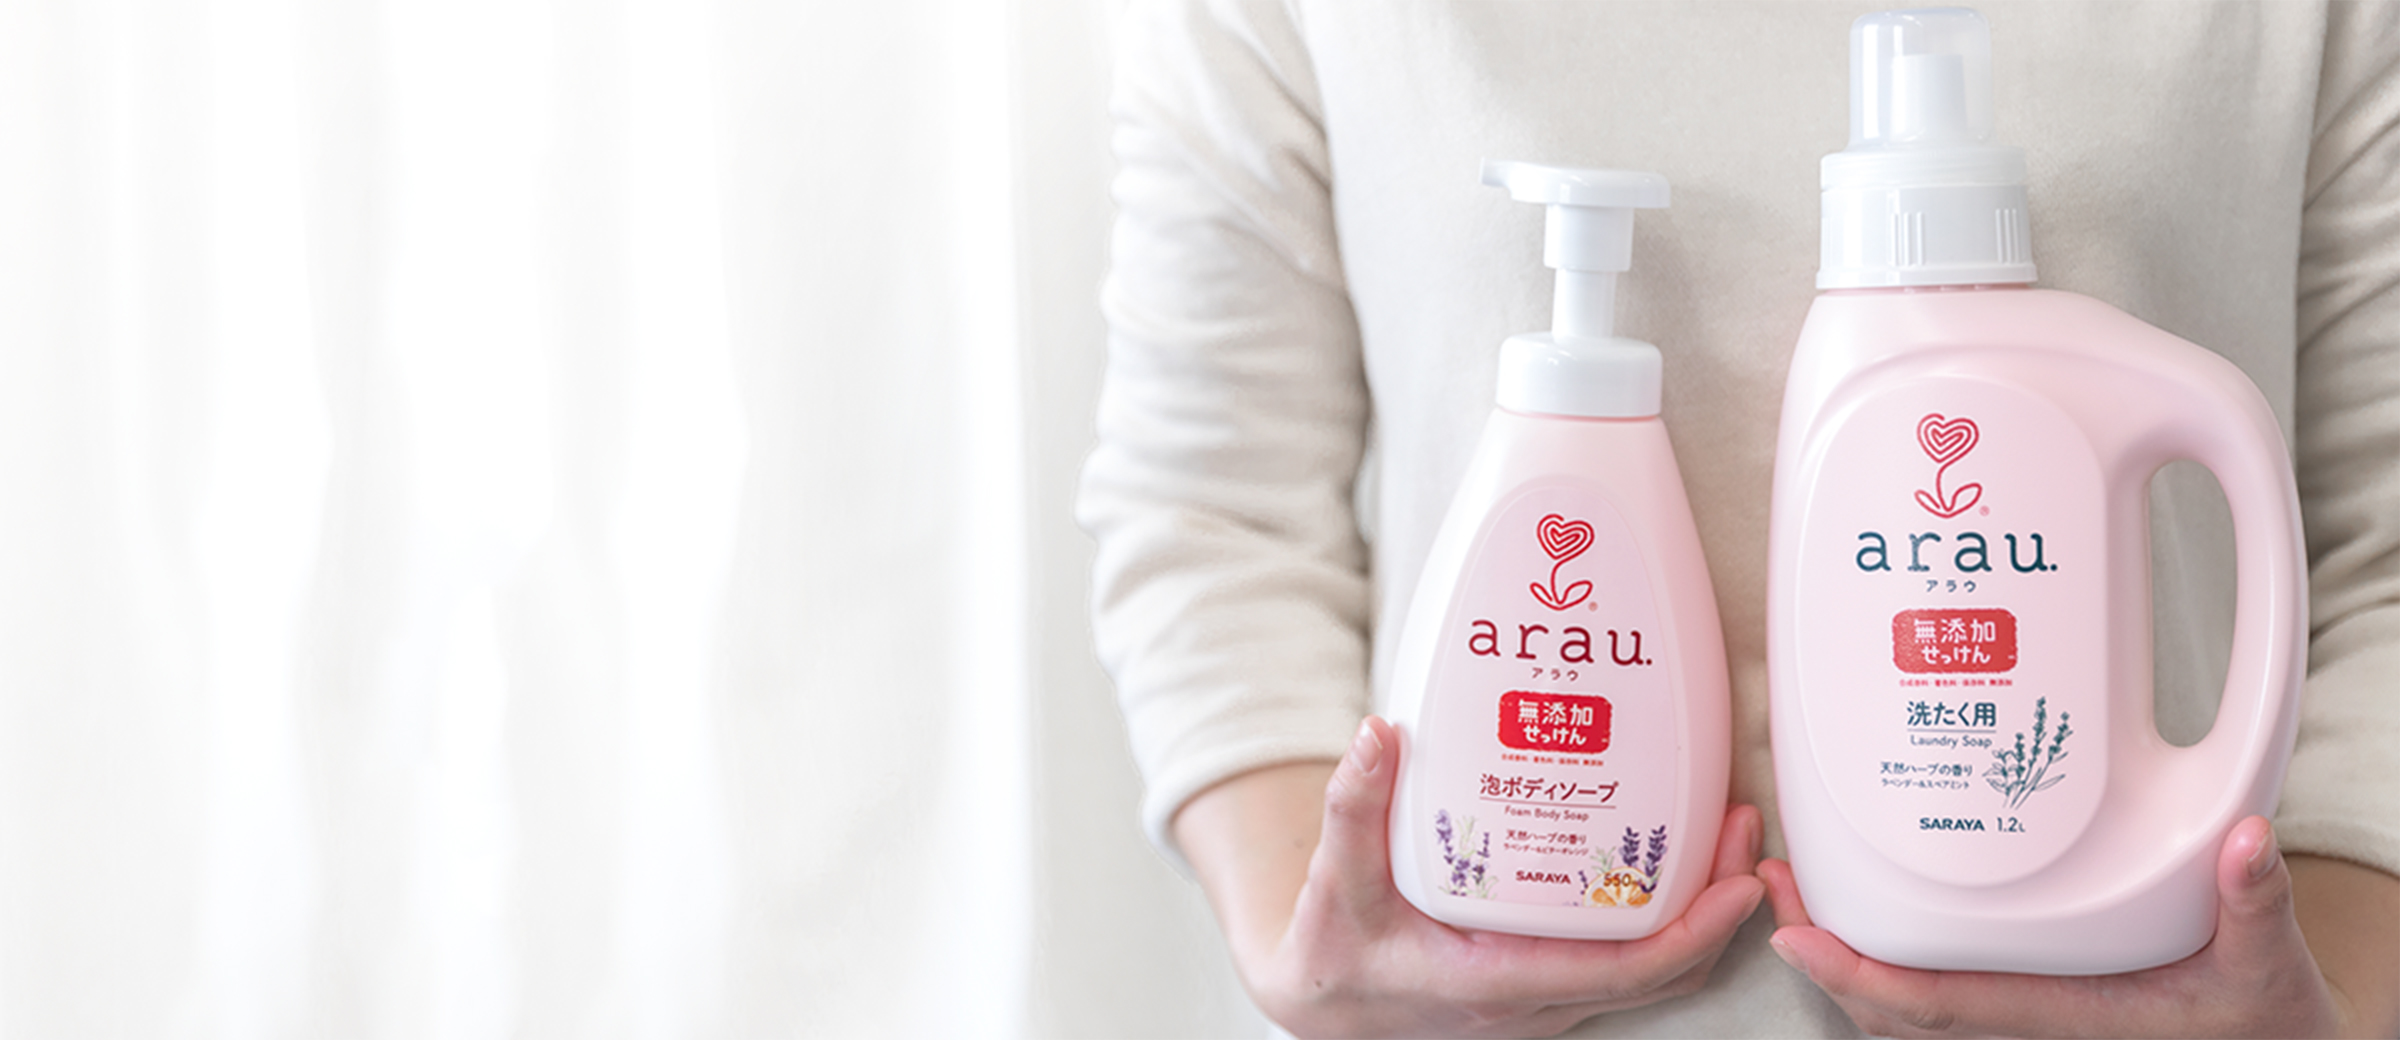 arau. – это натуральные моющие и косметические средства для всей семьи.